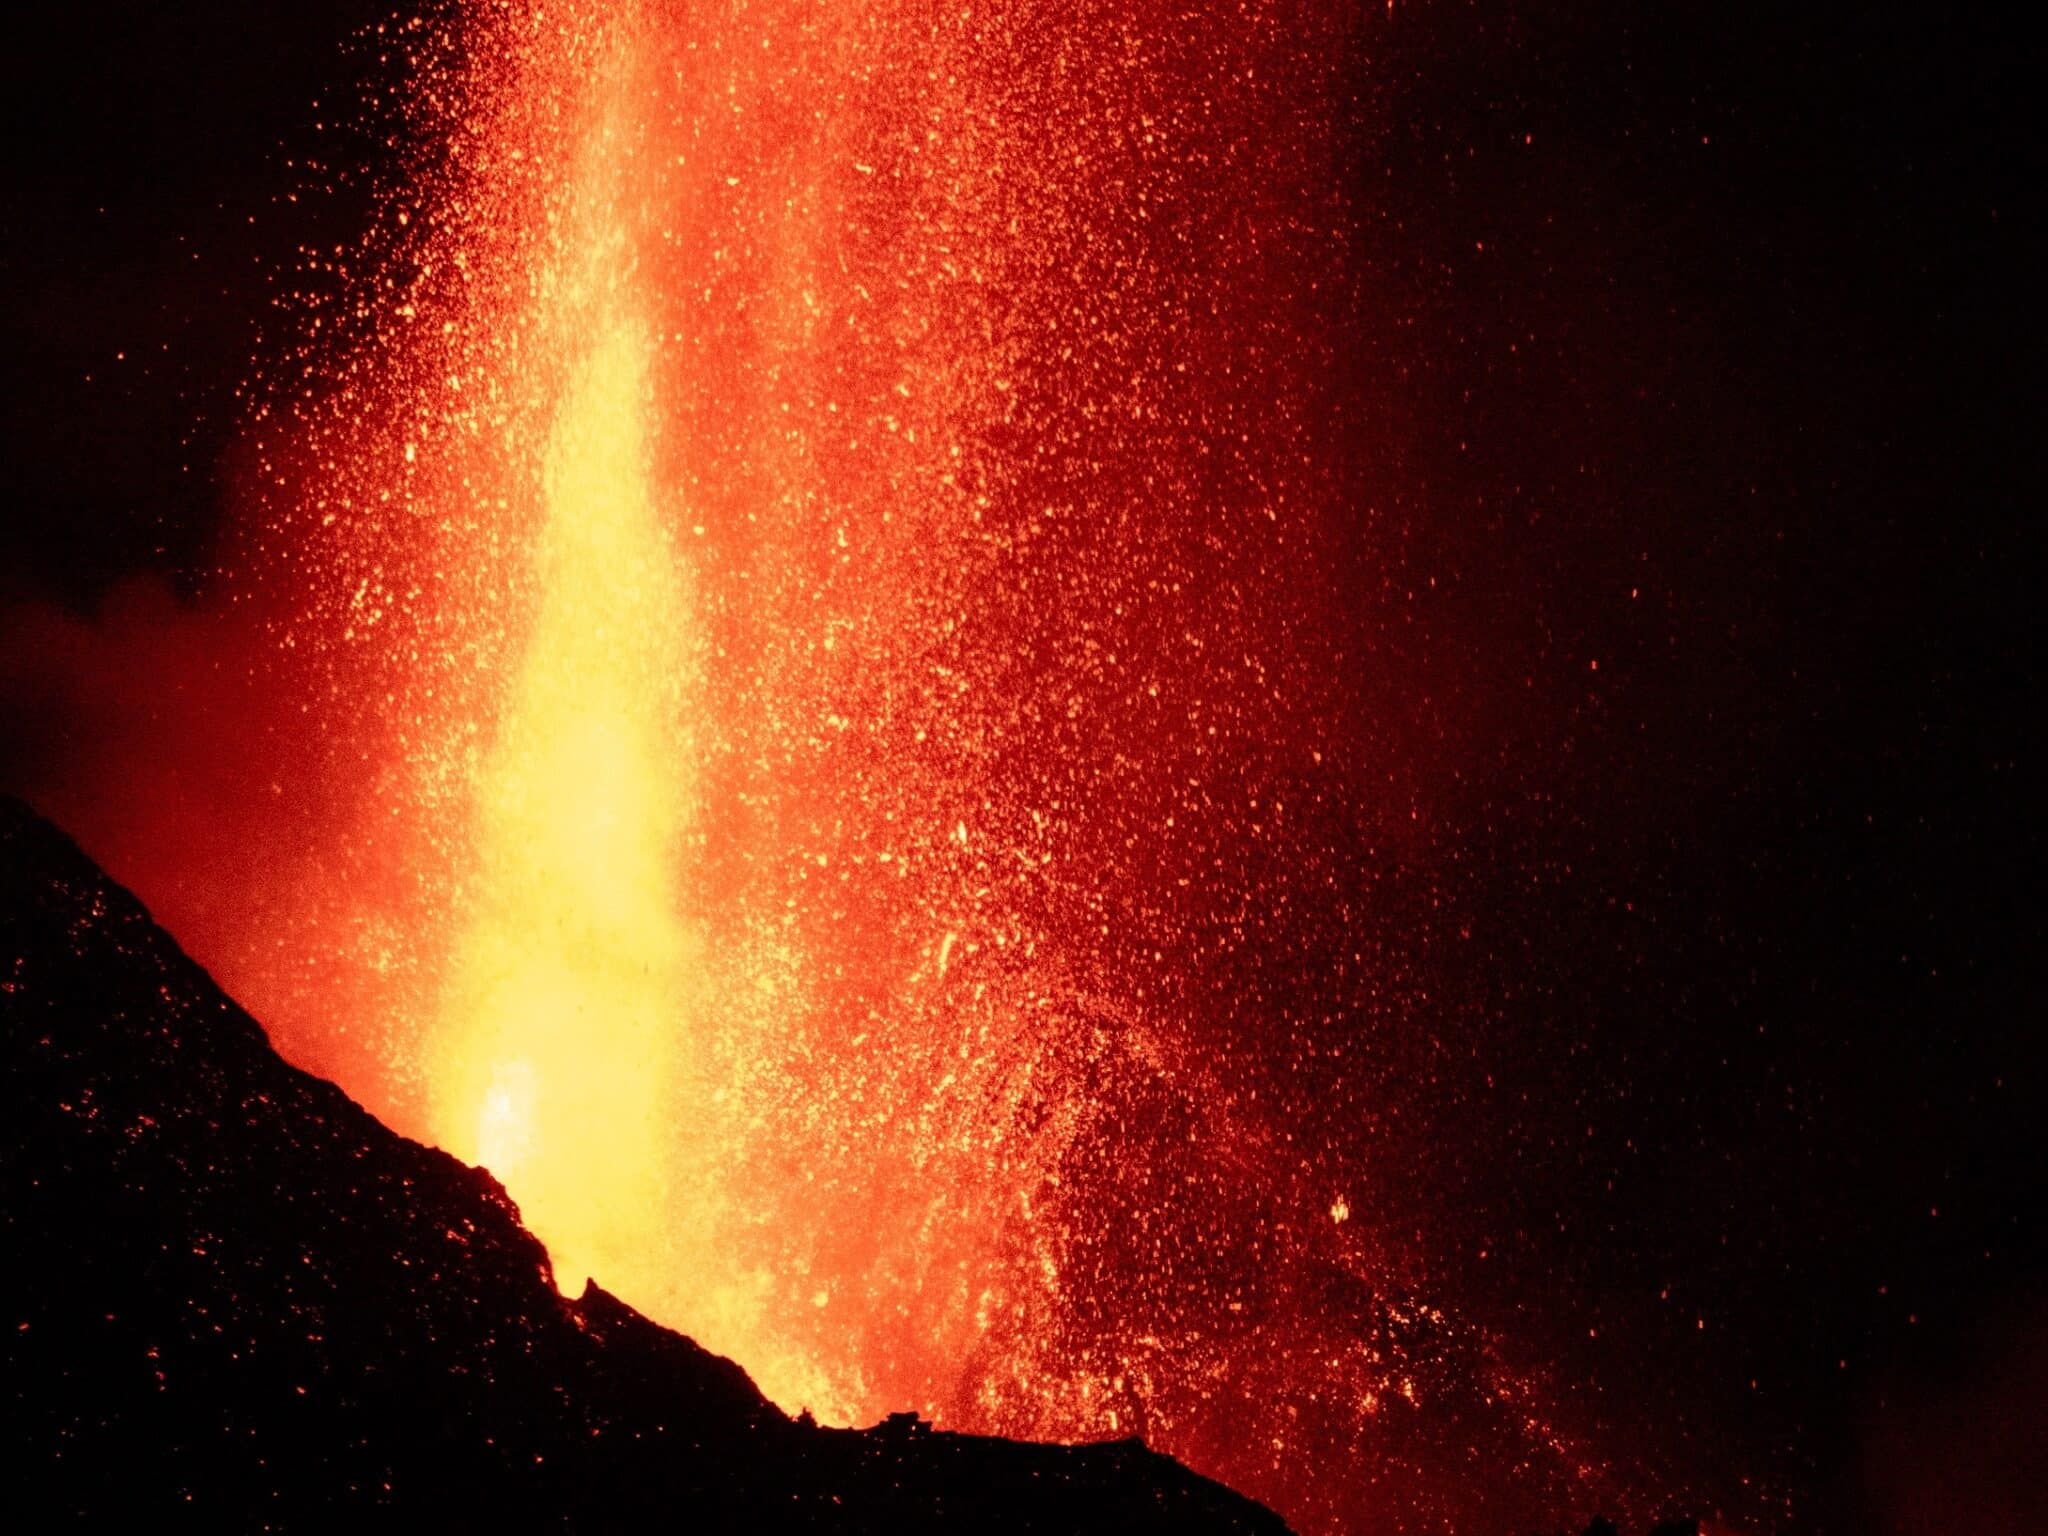 Involcan, ha informado de una nueva rotura del cono del volcán de Cumbre Vieja, hoy lunes en La Palma, lo que ha provocado más desbordamientos de lava y desprendimientos